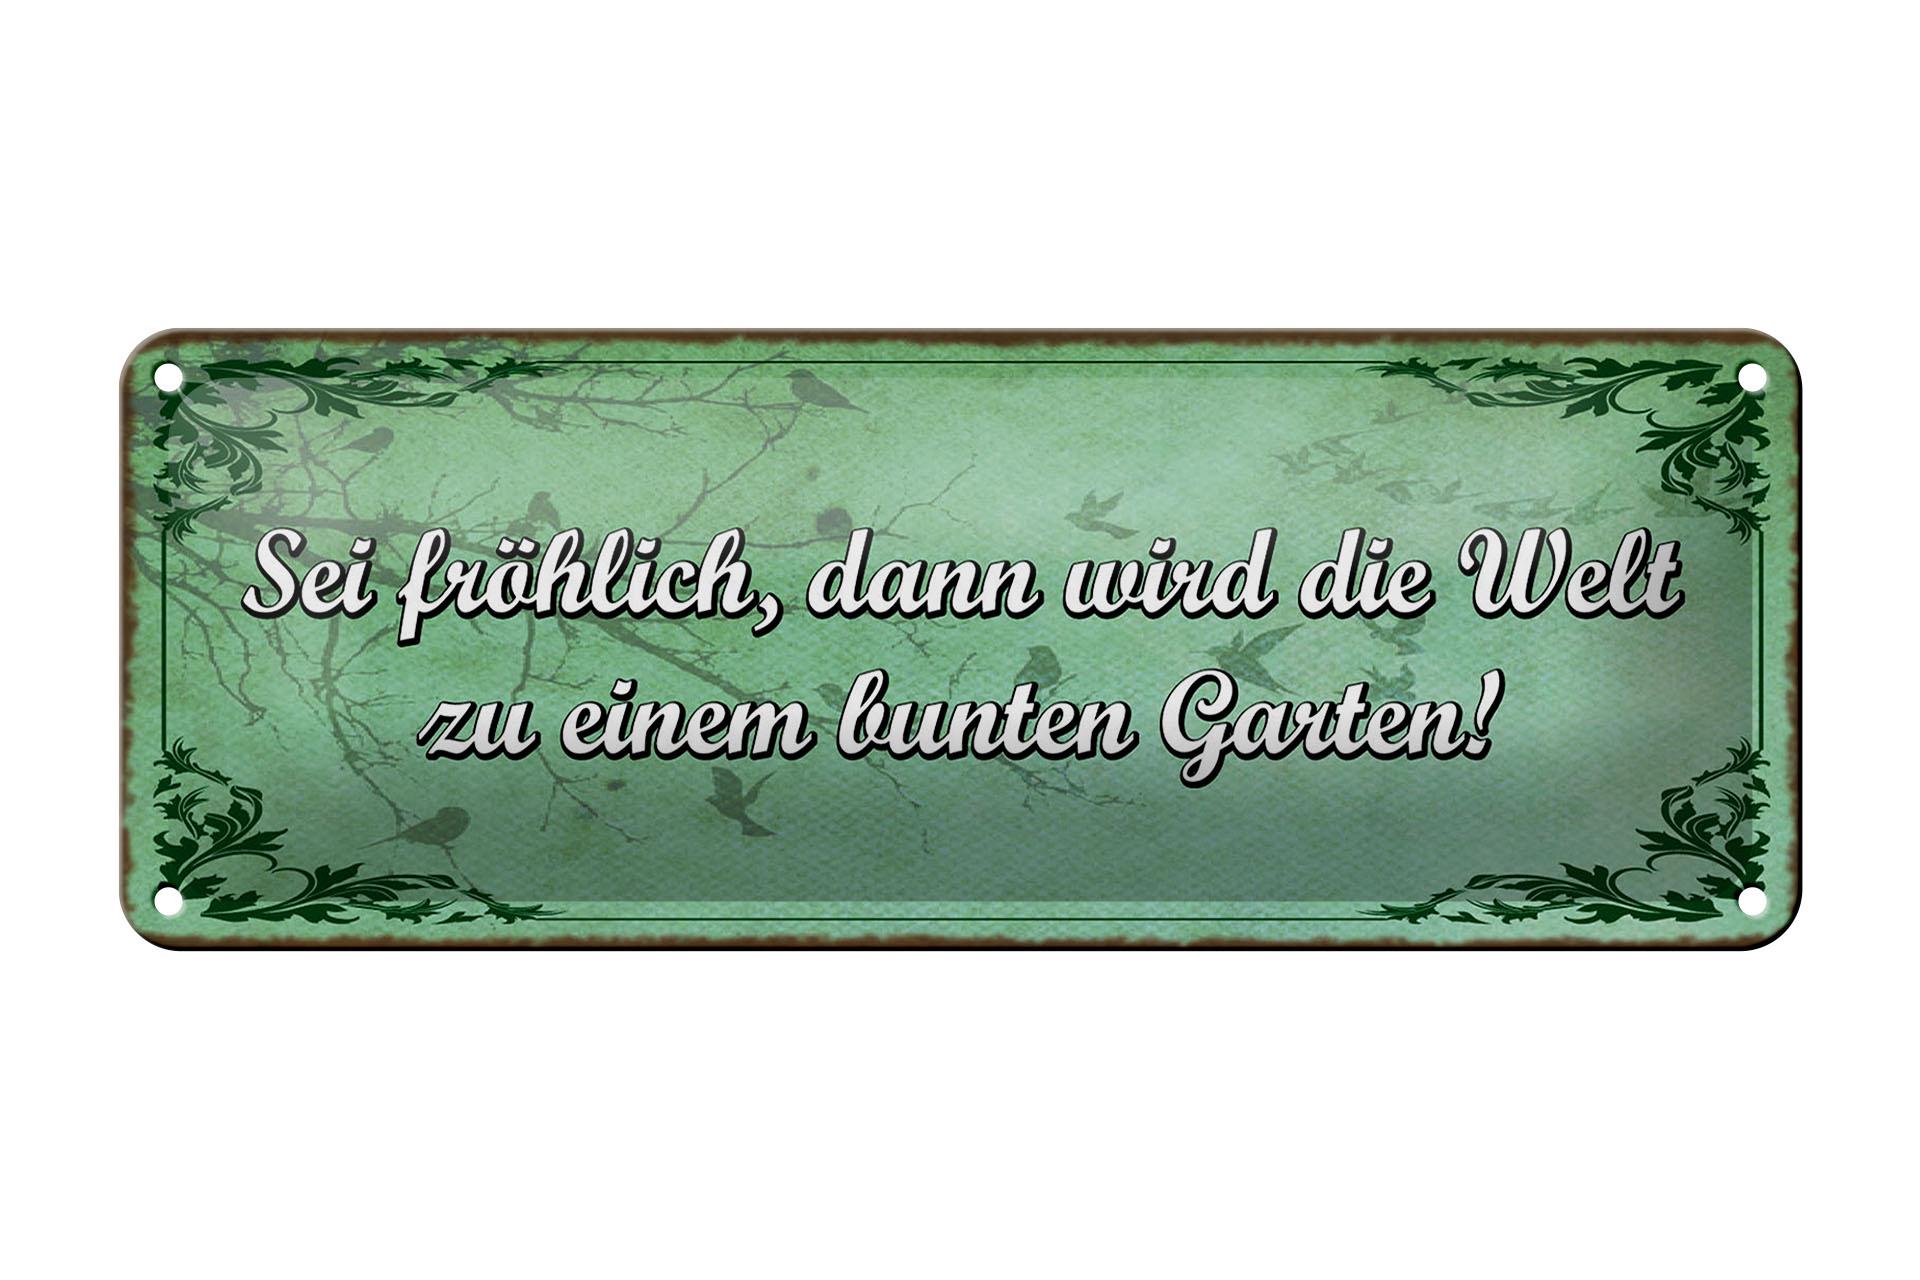 Blechschild Spruch 27x10 cm sei fröhlich Welt bunter Garten Deko Schild tin sign